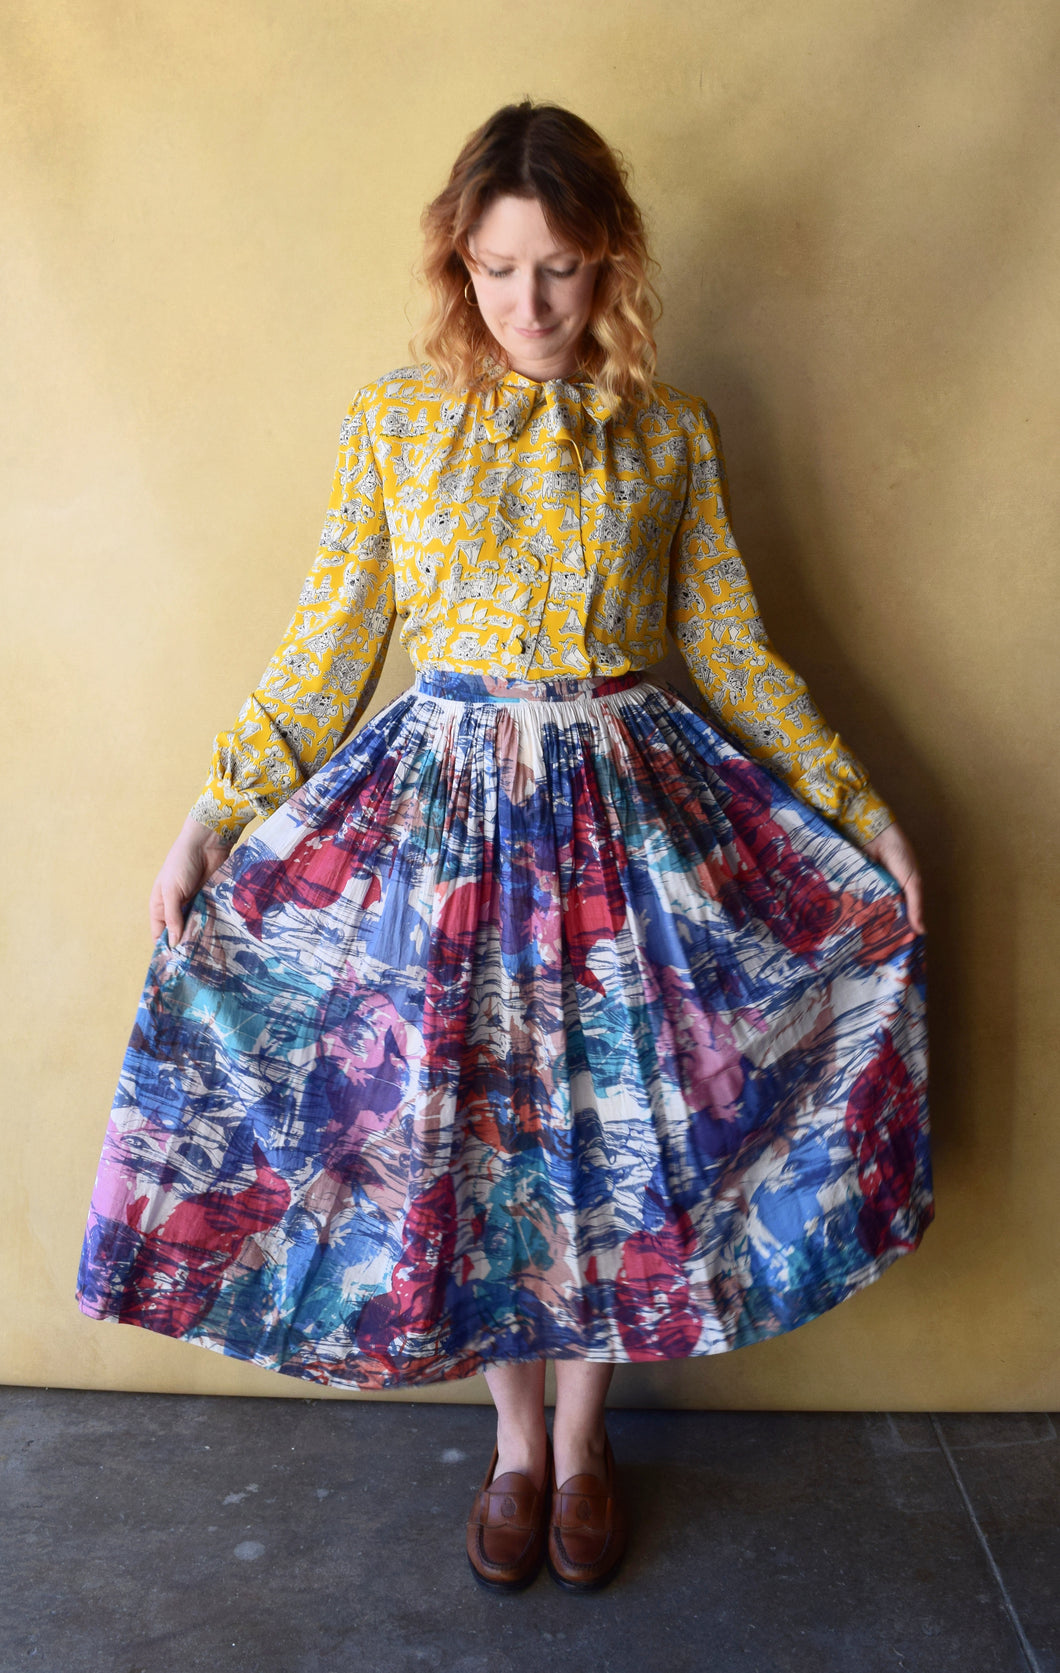 1950s skirt . vintage 50s skirt . size s